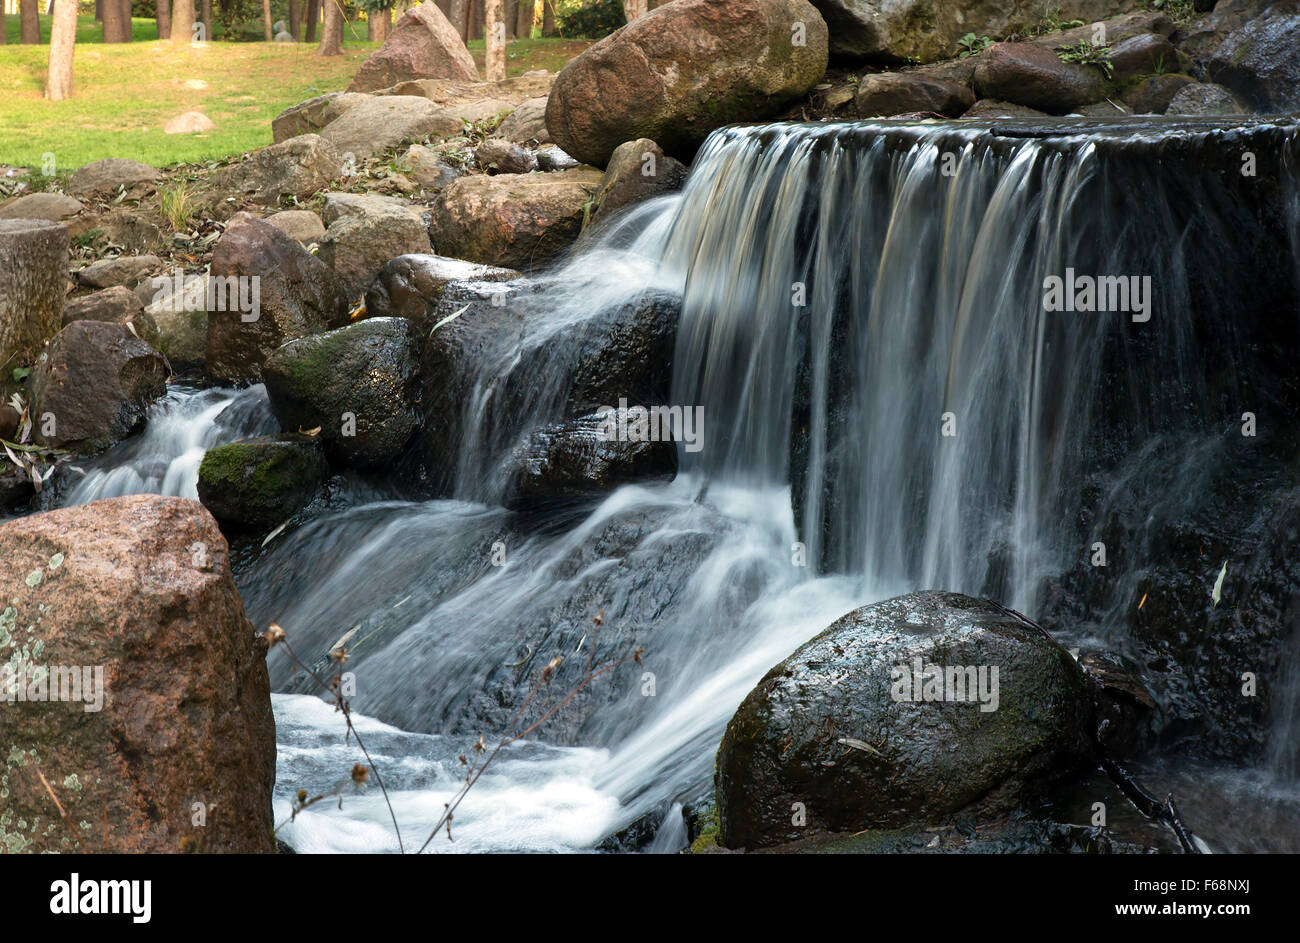 Poland.Park in Warsaw.Autumn.October.Small Wasserfall im Park. Sims mit dem Strom schwimmen. Wasser von oben die Steine fallen. Ho Stockfoto